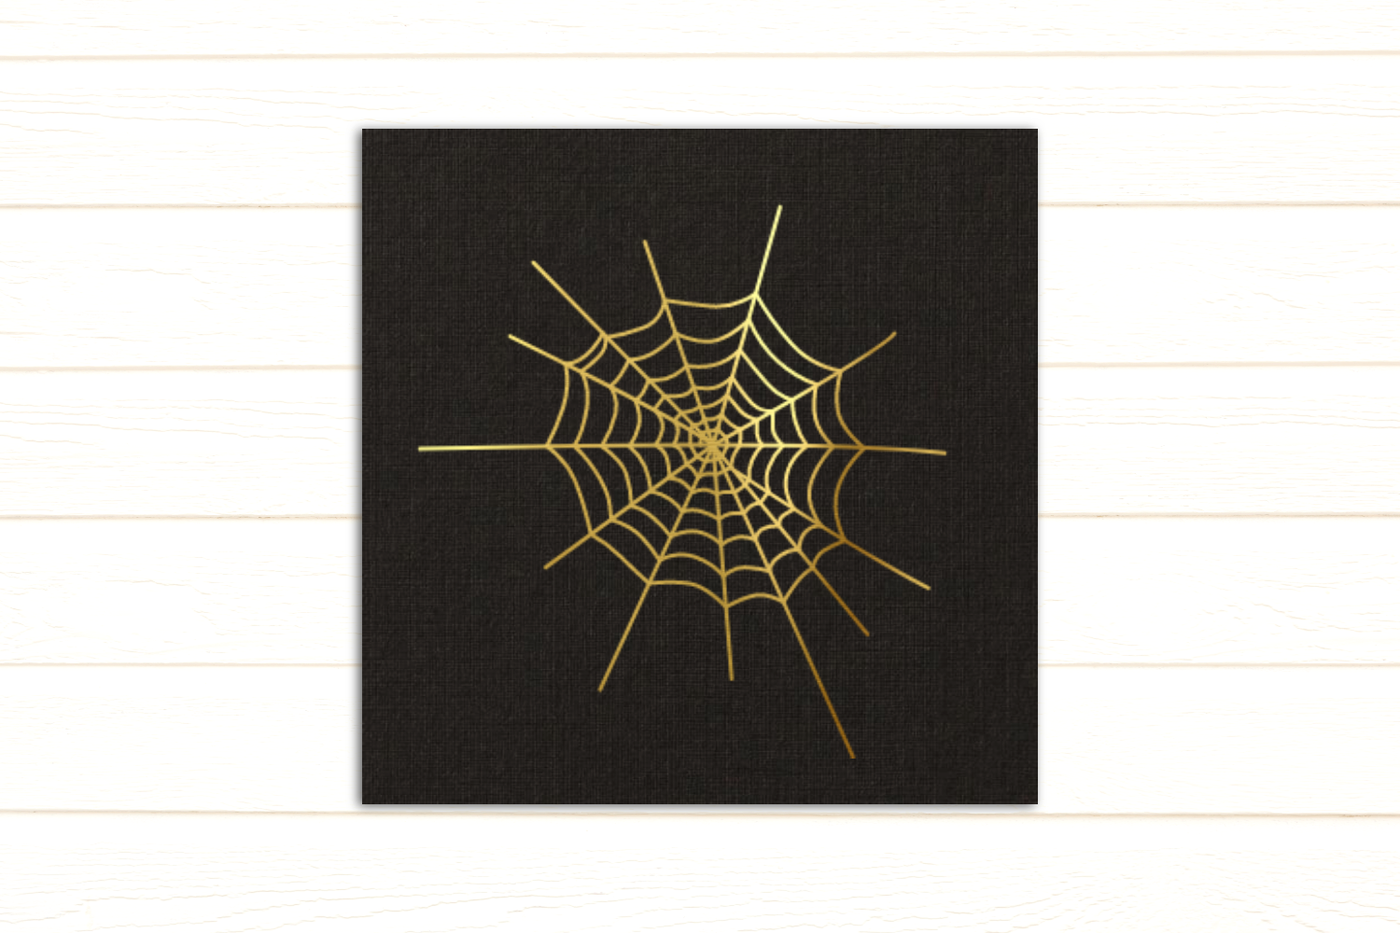 spiderweb single line sketch design in gold foil